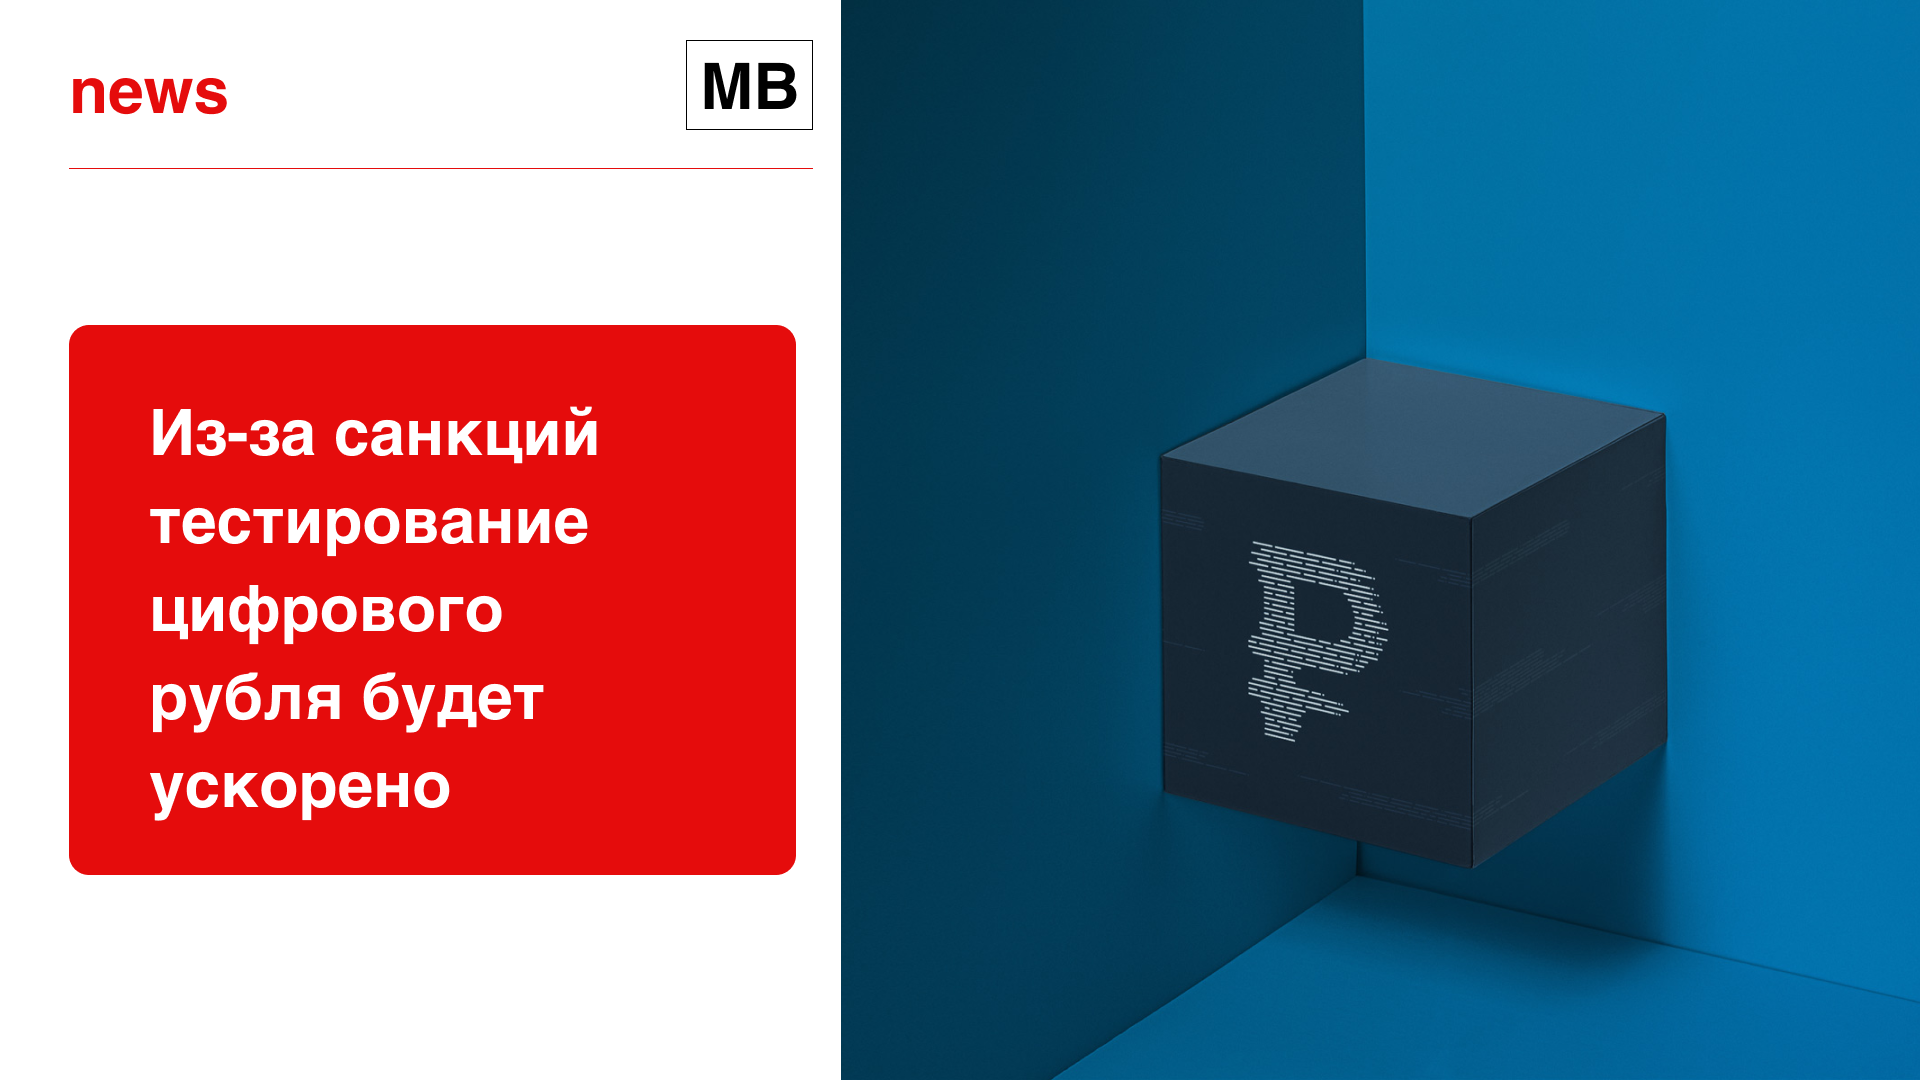 Из-за санкций тестирование цифрового рубля будет ускорено